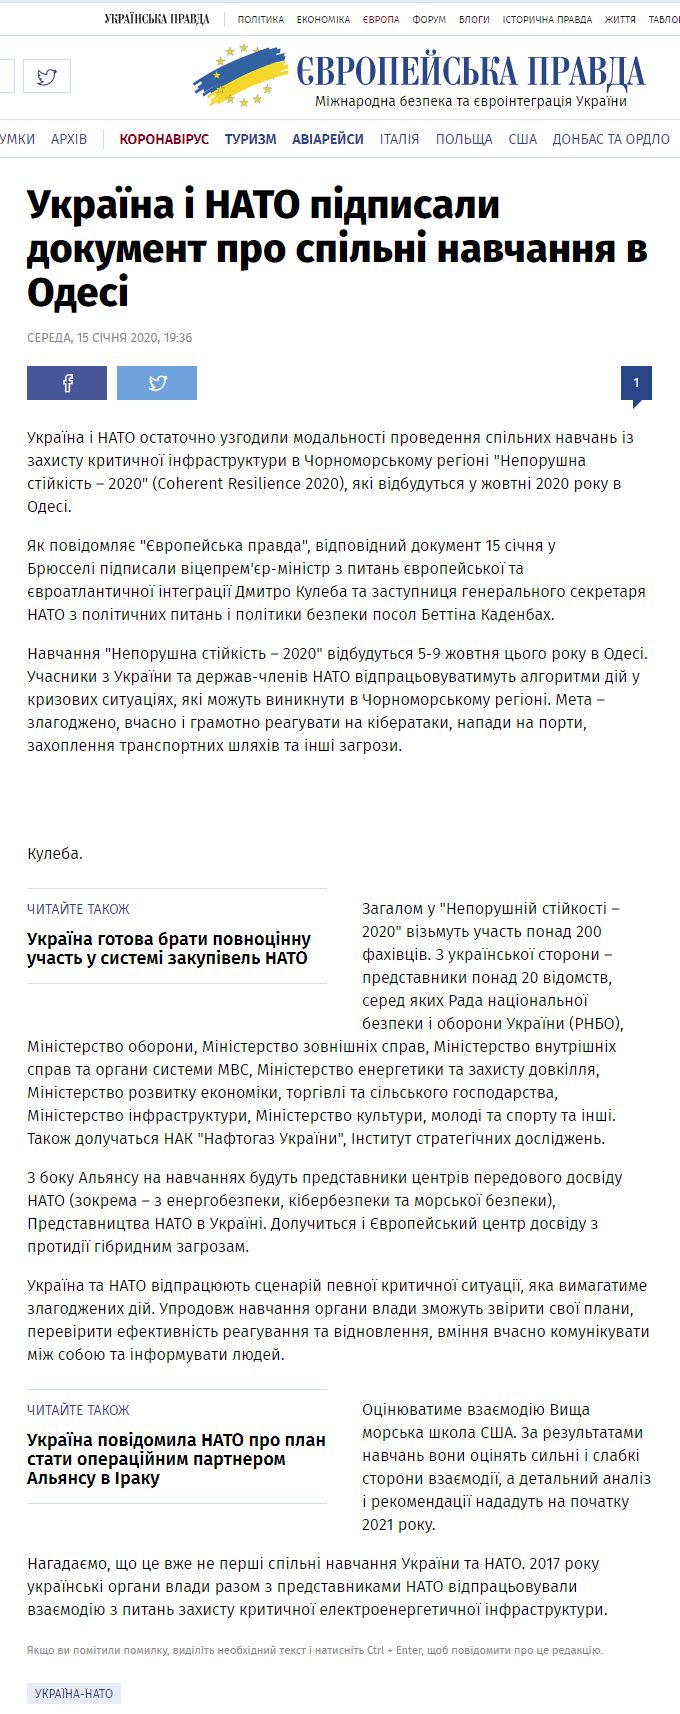 https://www.eurointegration.com.ua/news/2020/01/15/7105178/